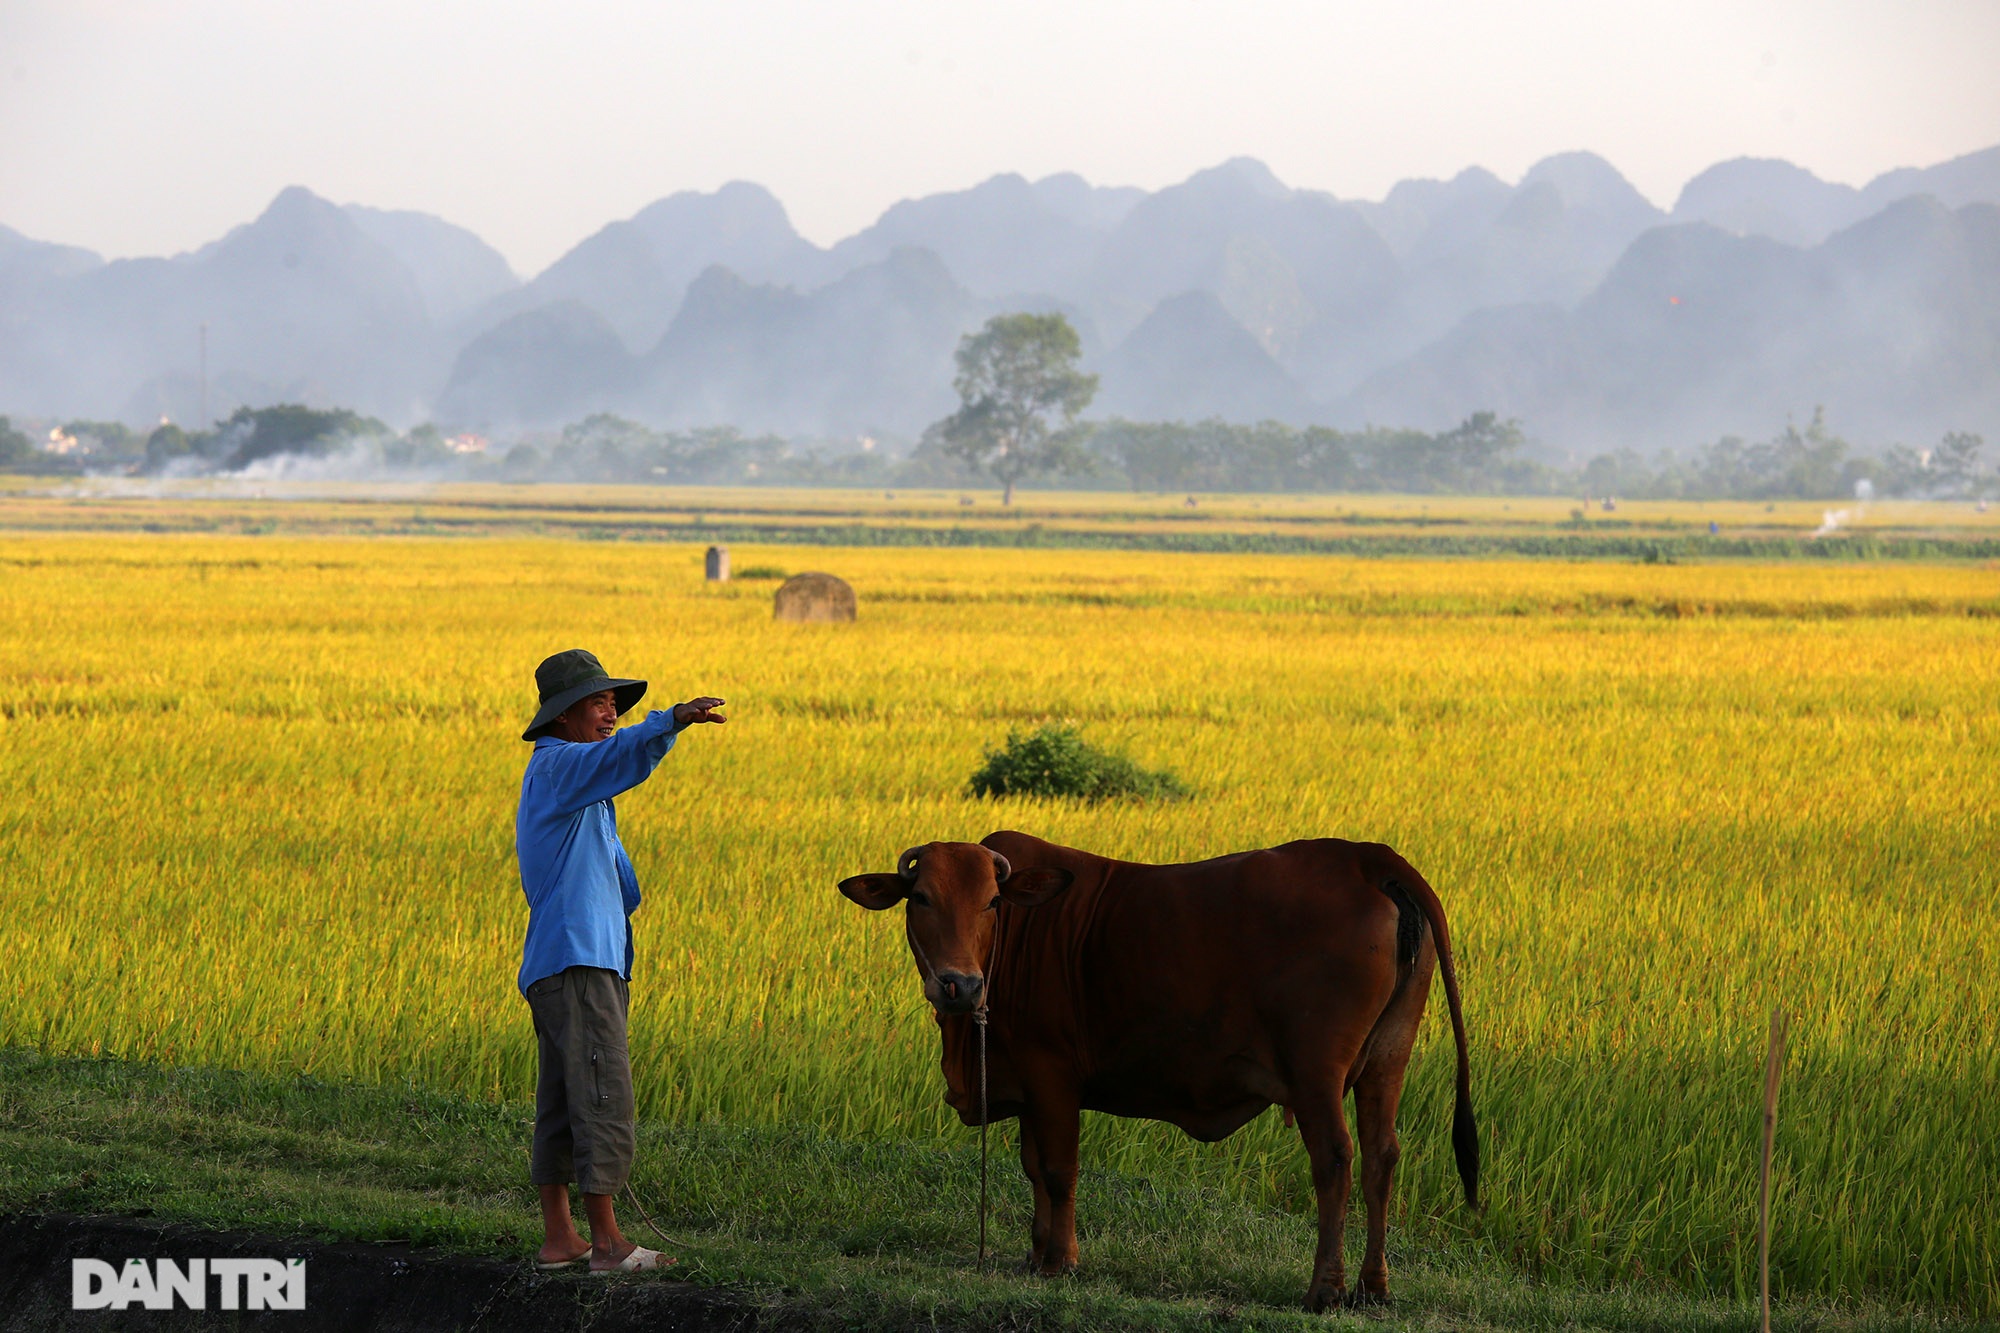 Cảnh quê vùng ngoại ô Hà Nội với những đồng lúa xanh ngắt, con đường đất láng bóng dưới hàng cây xanh um tím. Đây chính là những góc nhìn đẹp nhất của Hà Nội mà bạn không thể bỏ qua.